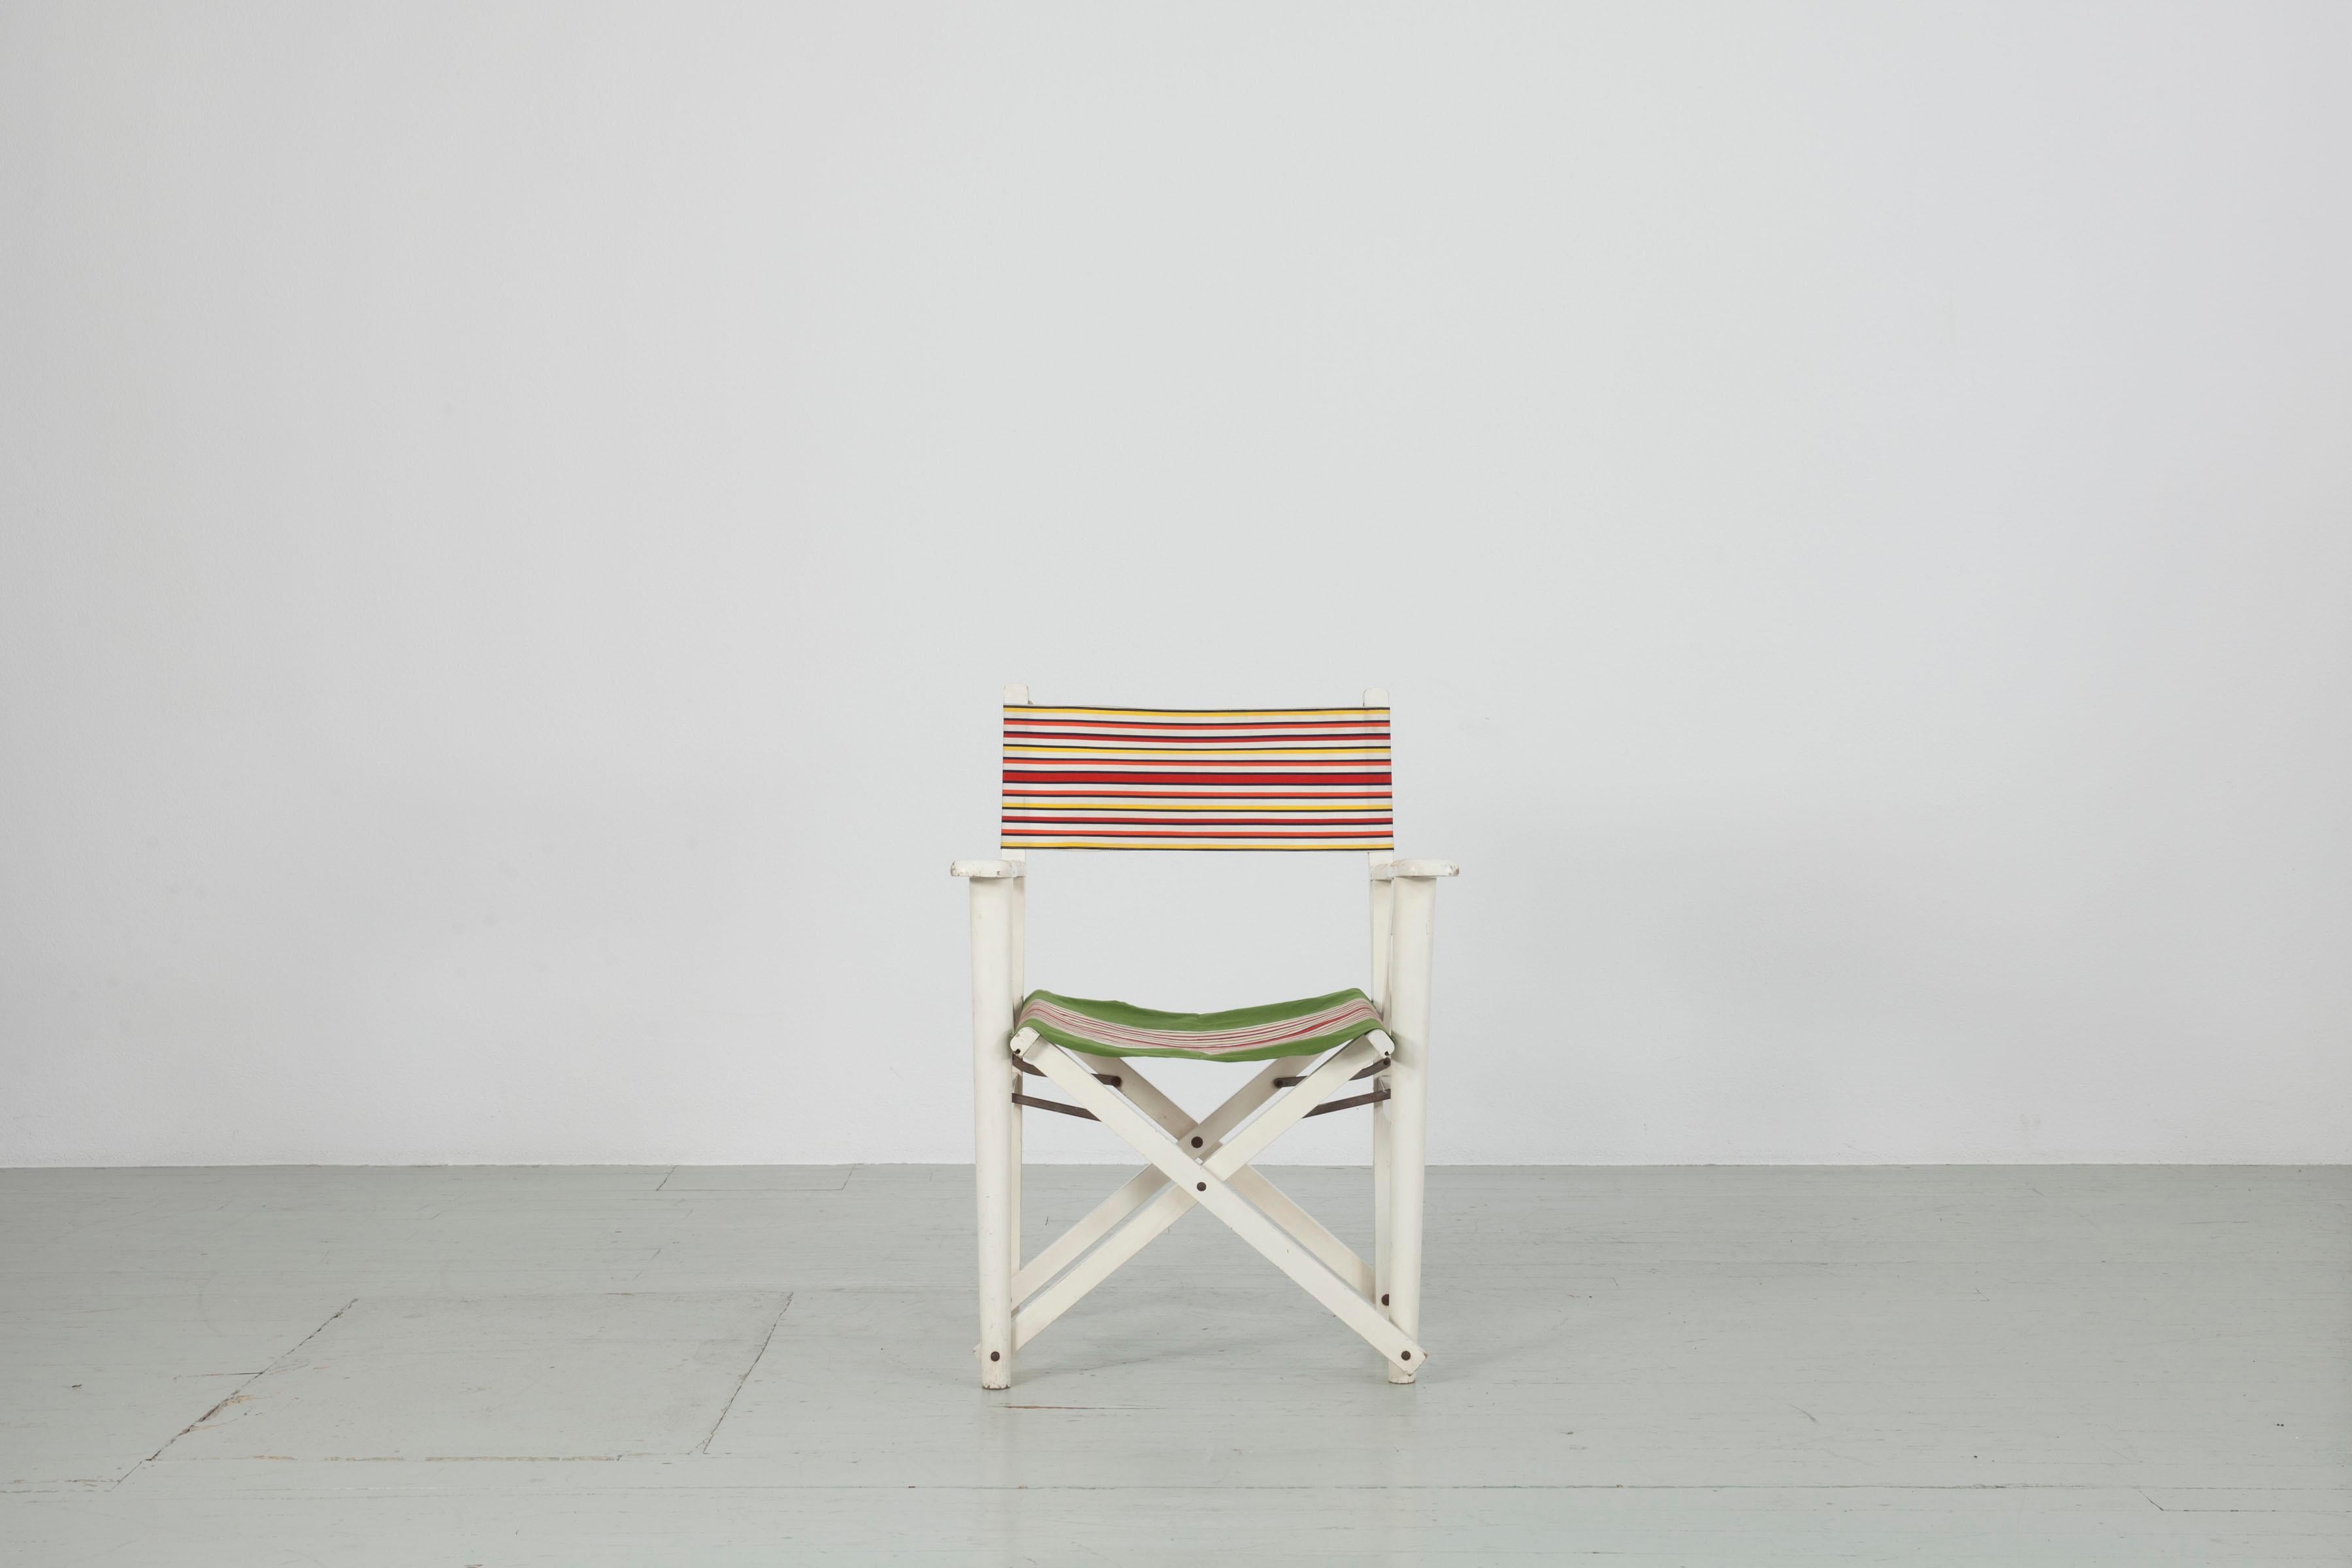 Dieser klappbare Regiestuhl wurde in den 1950er Jahren in Italien im Stil von Fratelli Reguitti hergestellt. Der Stuhl ist in gutem Zustand mit Originalpolsterung und schöner Patina durch minimales Ausbleichen. 

Zögern Sie nicht, uns für weitere